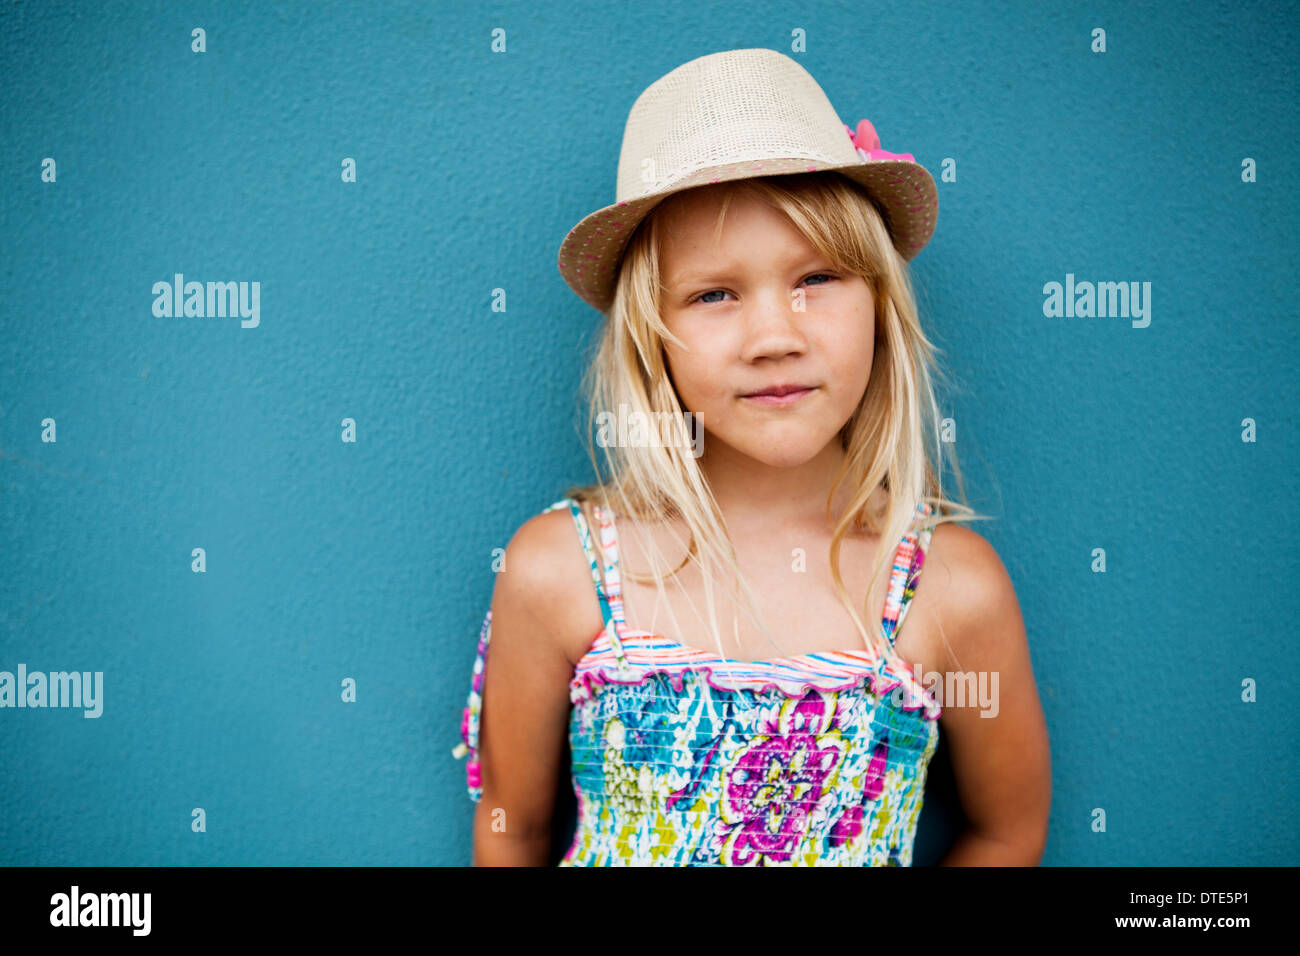 Porträt von netten jungen Mädchen in entspannter Haltung stylischen Hut außerhalb Hintergrund blaue Wand Stockfoto